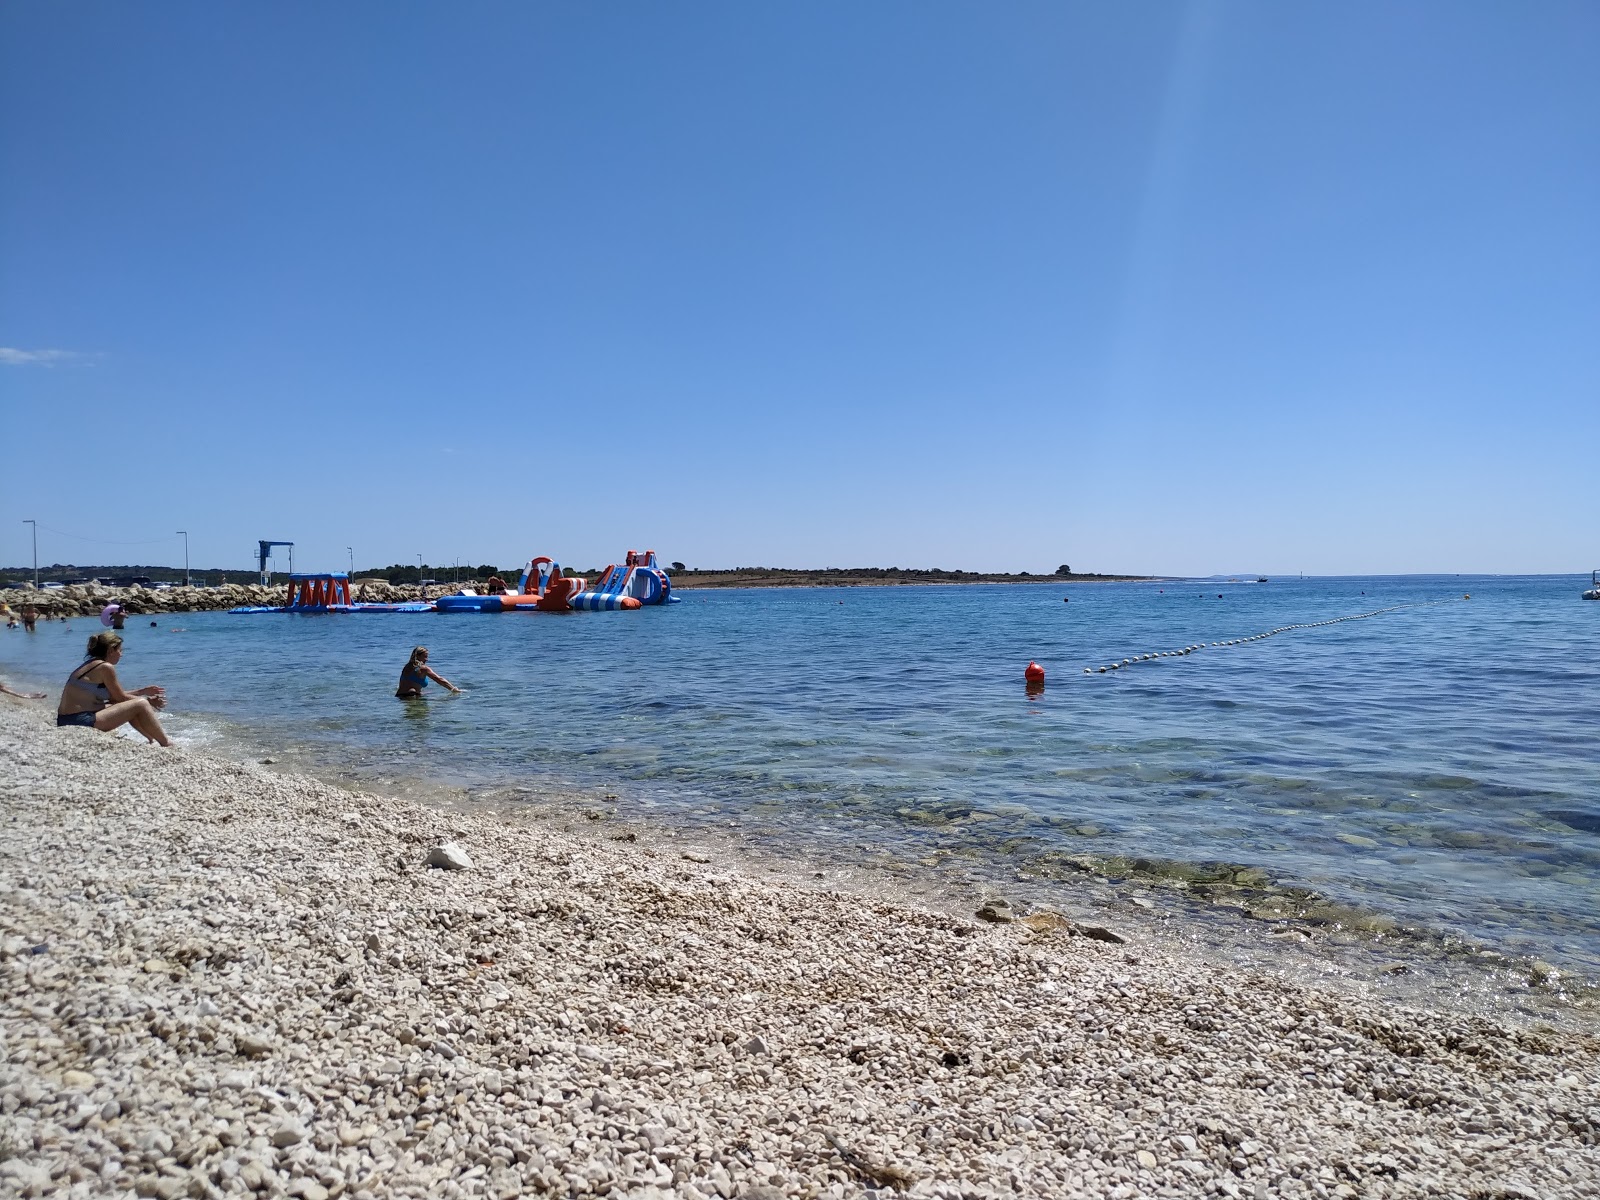 Riva beach'in fotoğrafı hafif çakıl yüzey ile